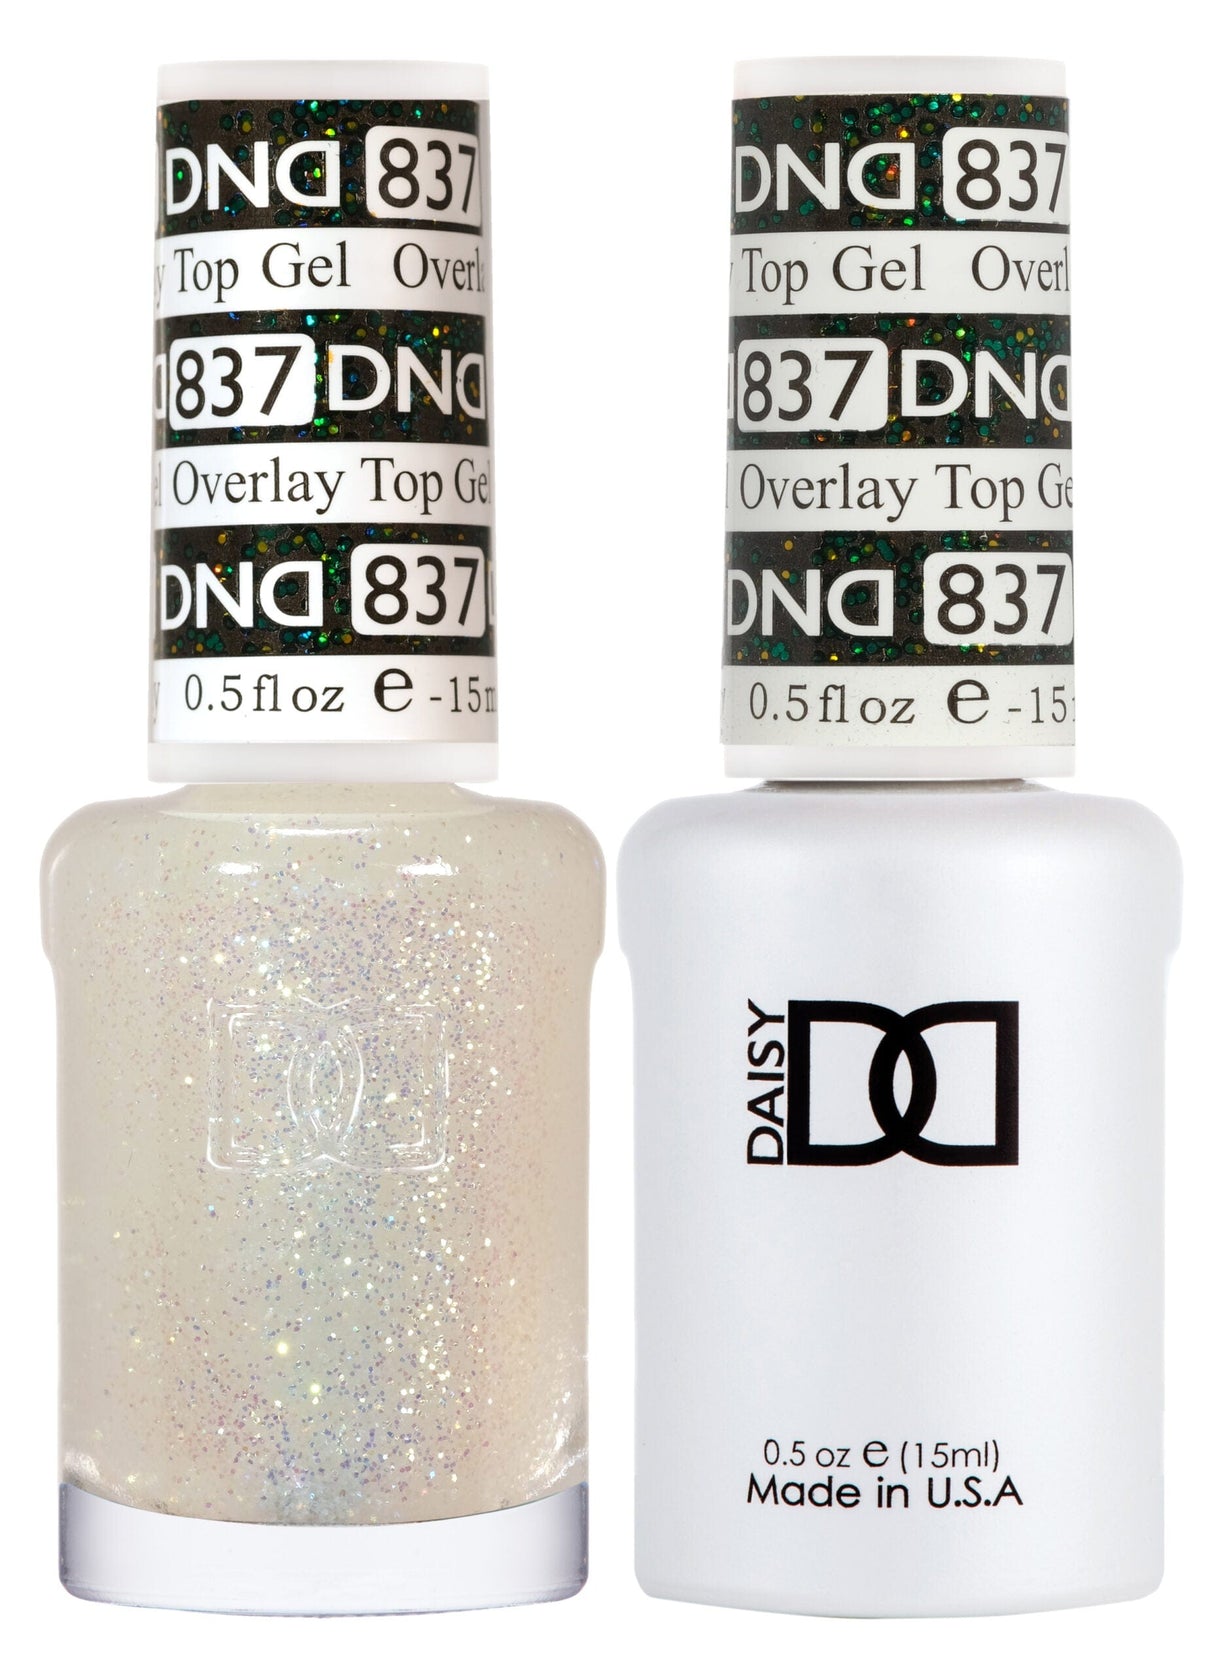 DND Duo Gel Matching Color 837 Overlay Top Gel